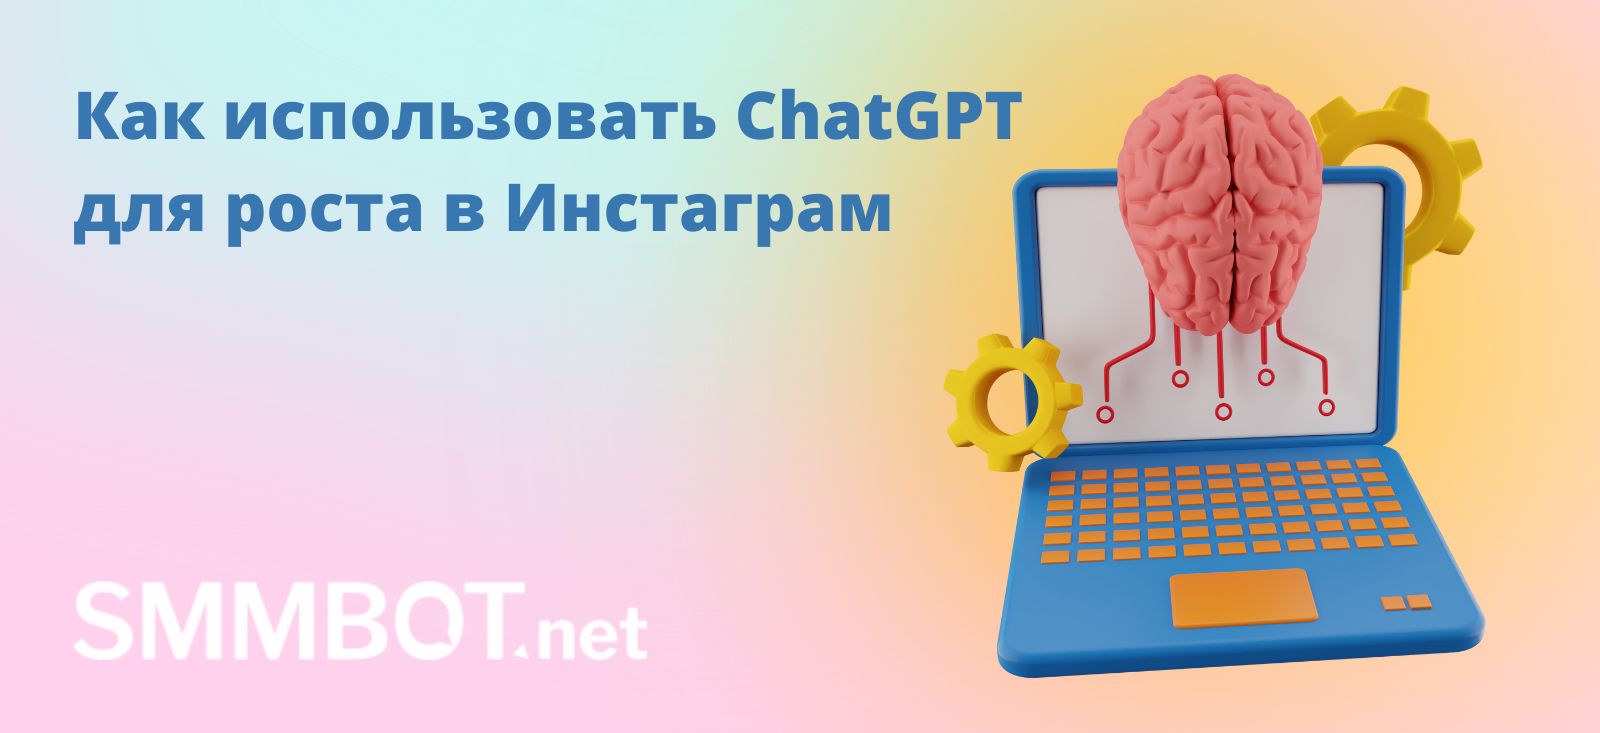 Как использовать ChatGPT для роста в Инстаграм